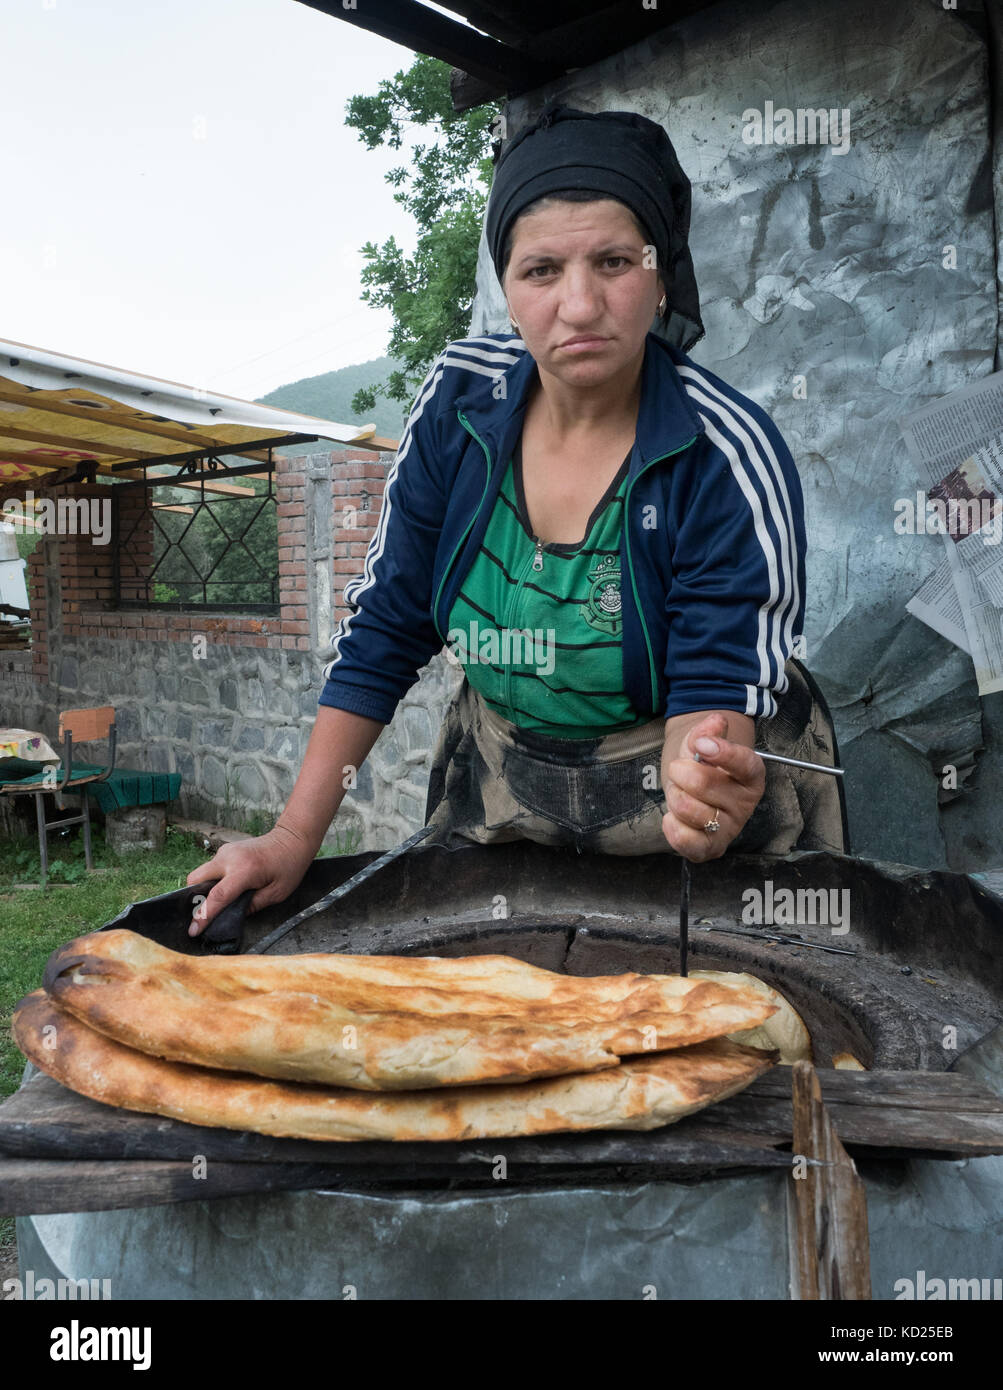 Qabala, Azerbaigian - 20 Maggio 2017 : il ritratto di una donna che fa il pane tradizionale . un apposito gancio di metallo è usato per tenere il pane alle pareti o prendere Foto Stock